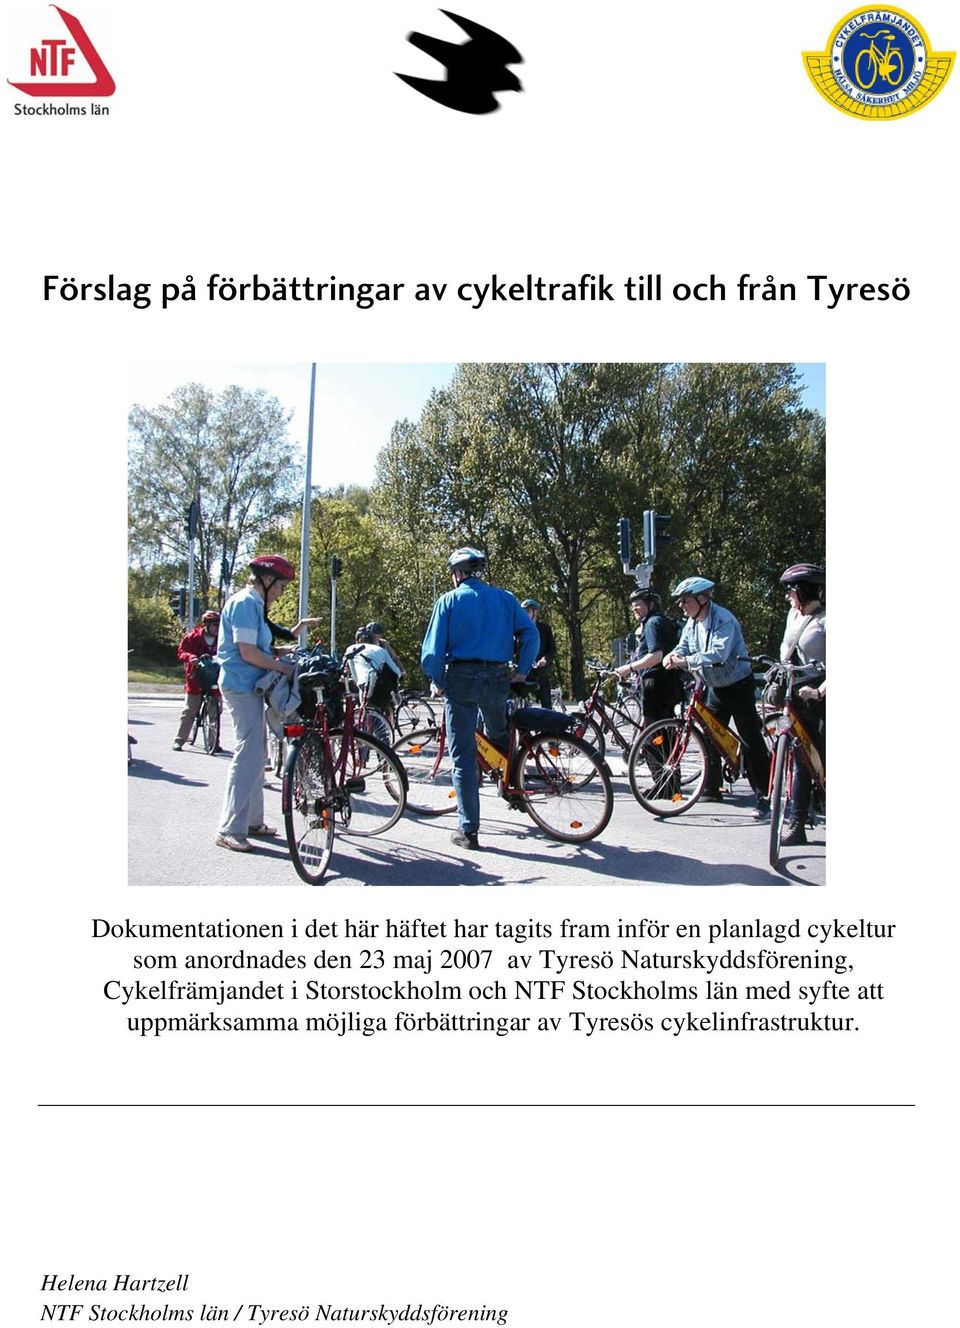 Naturskyddsförening, Cykelfrämjandet i Storstockholm och NTF Stockholms län med syfte att